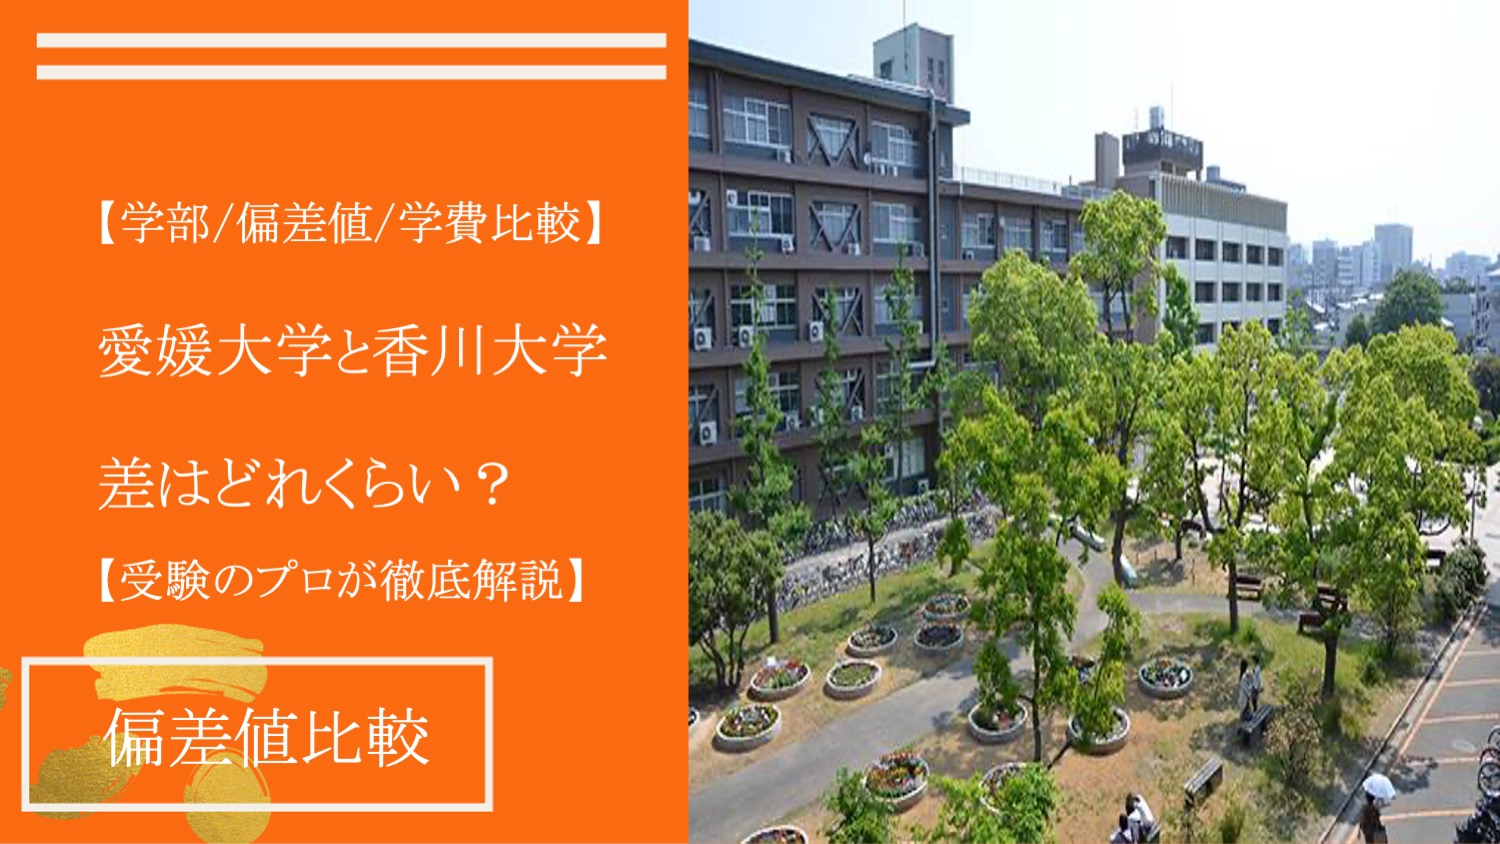 【学部/偏差値/学費】愛媛大学と香川大学を受験のプロが比較